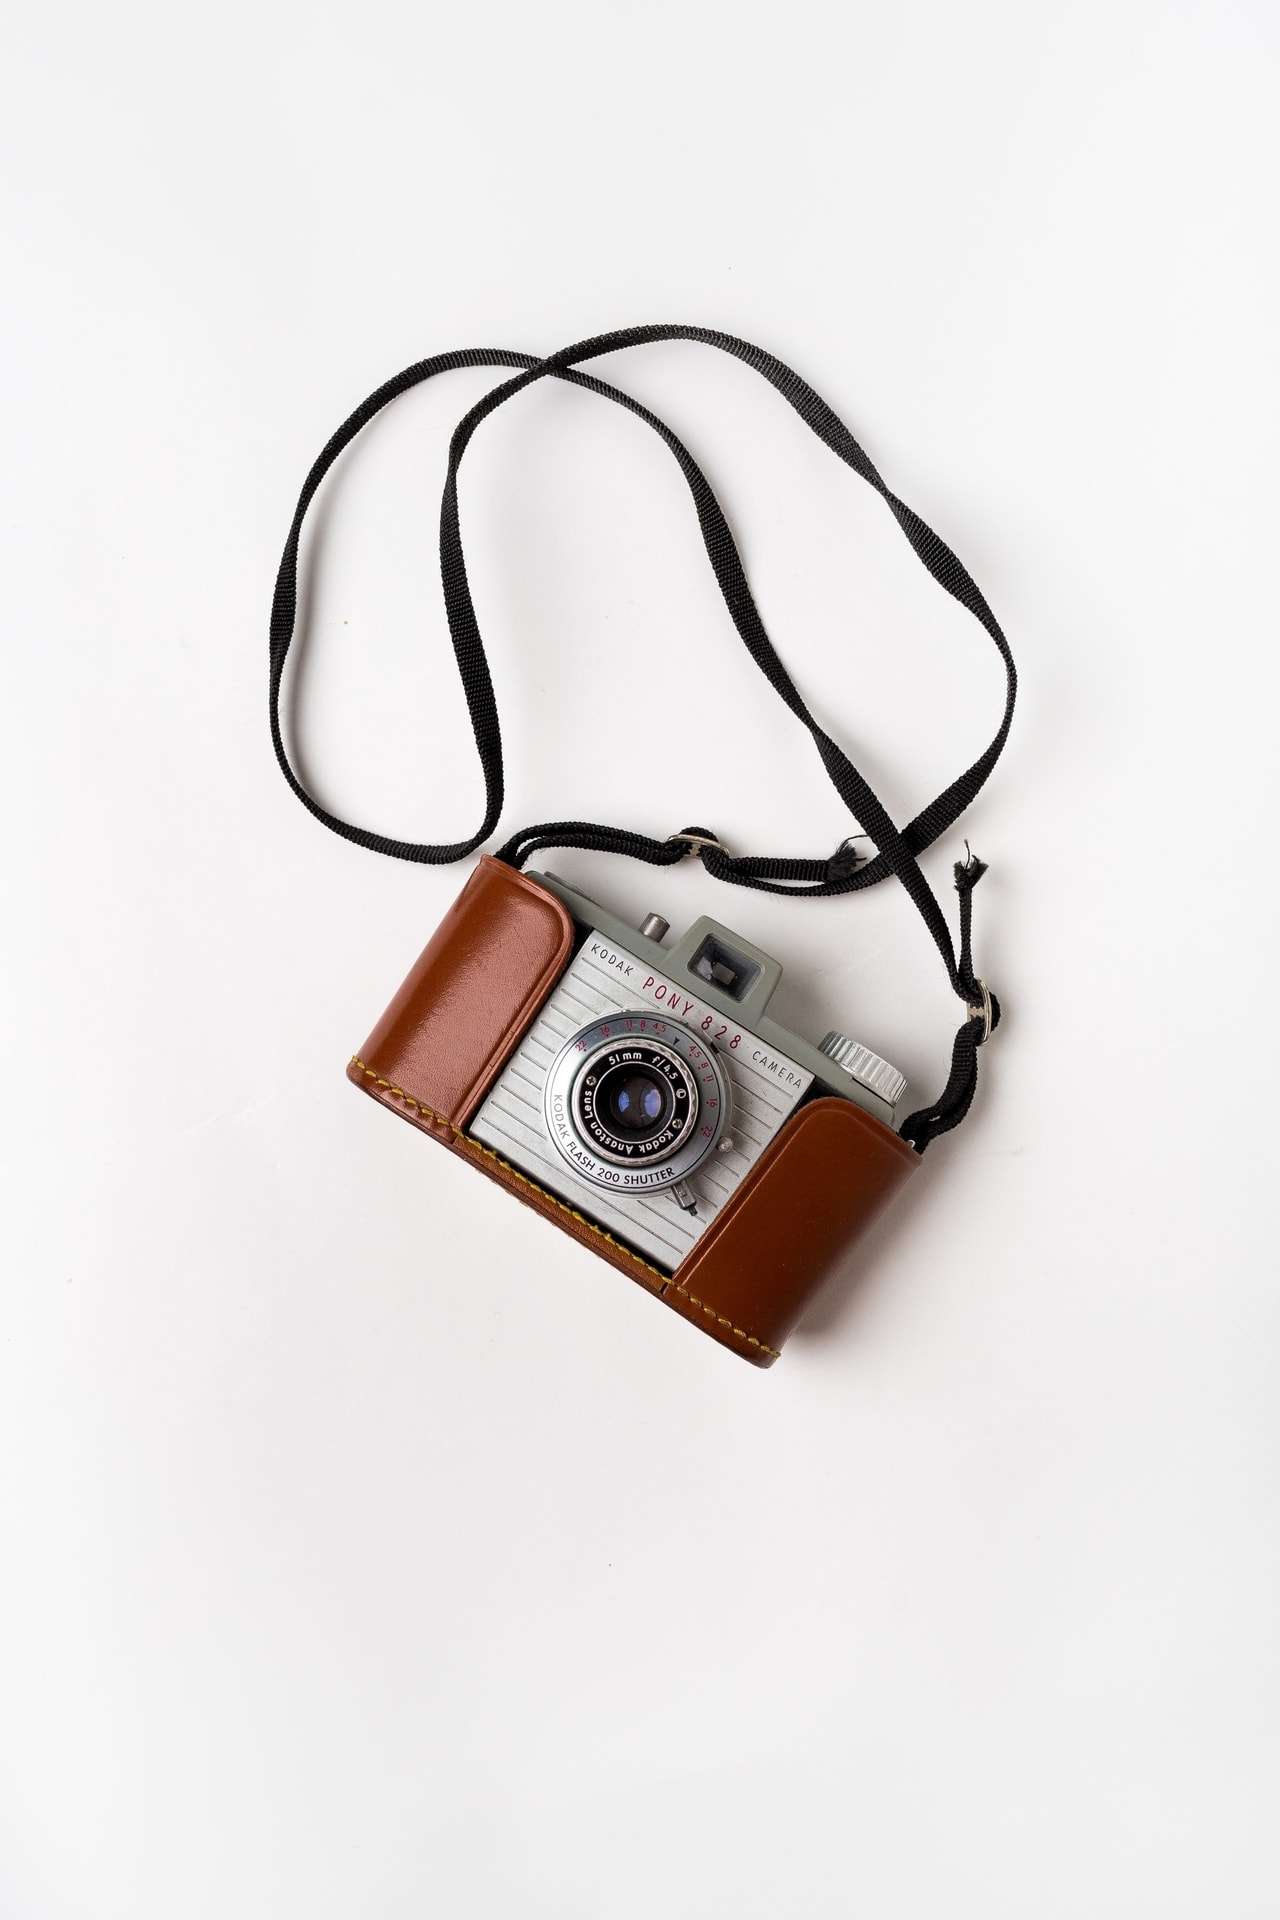 Cámara fotográfica kodak vintage con funda y correa de cuero